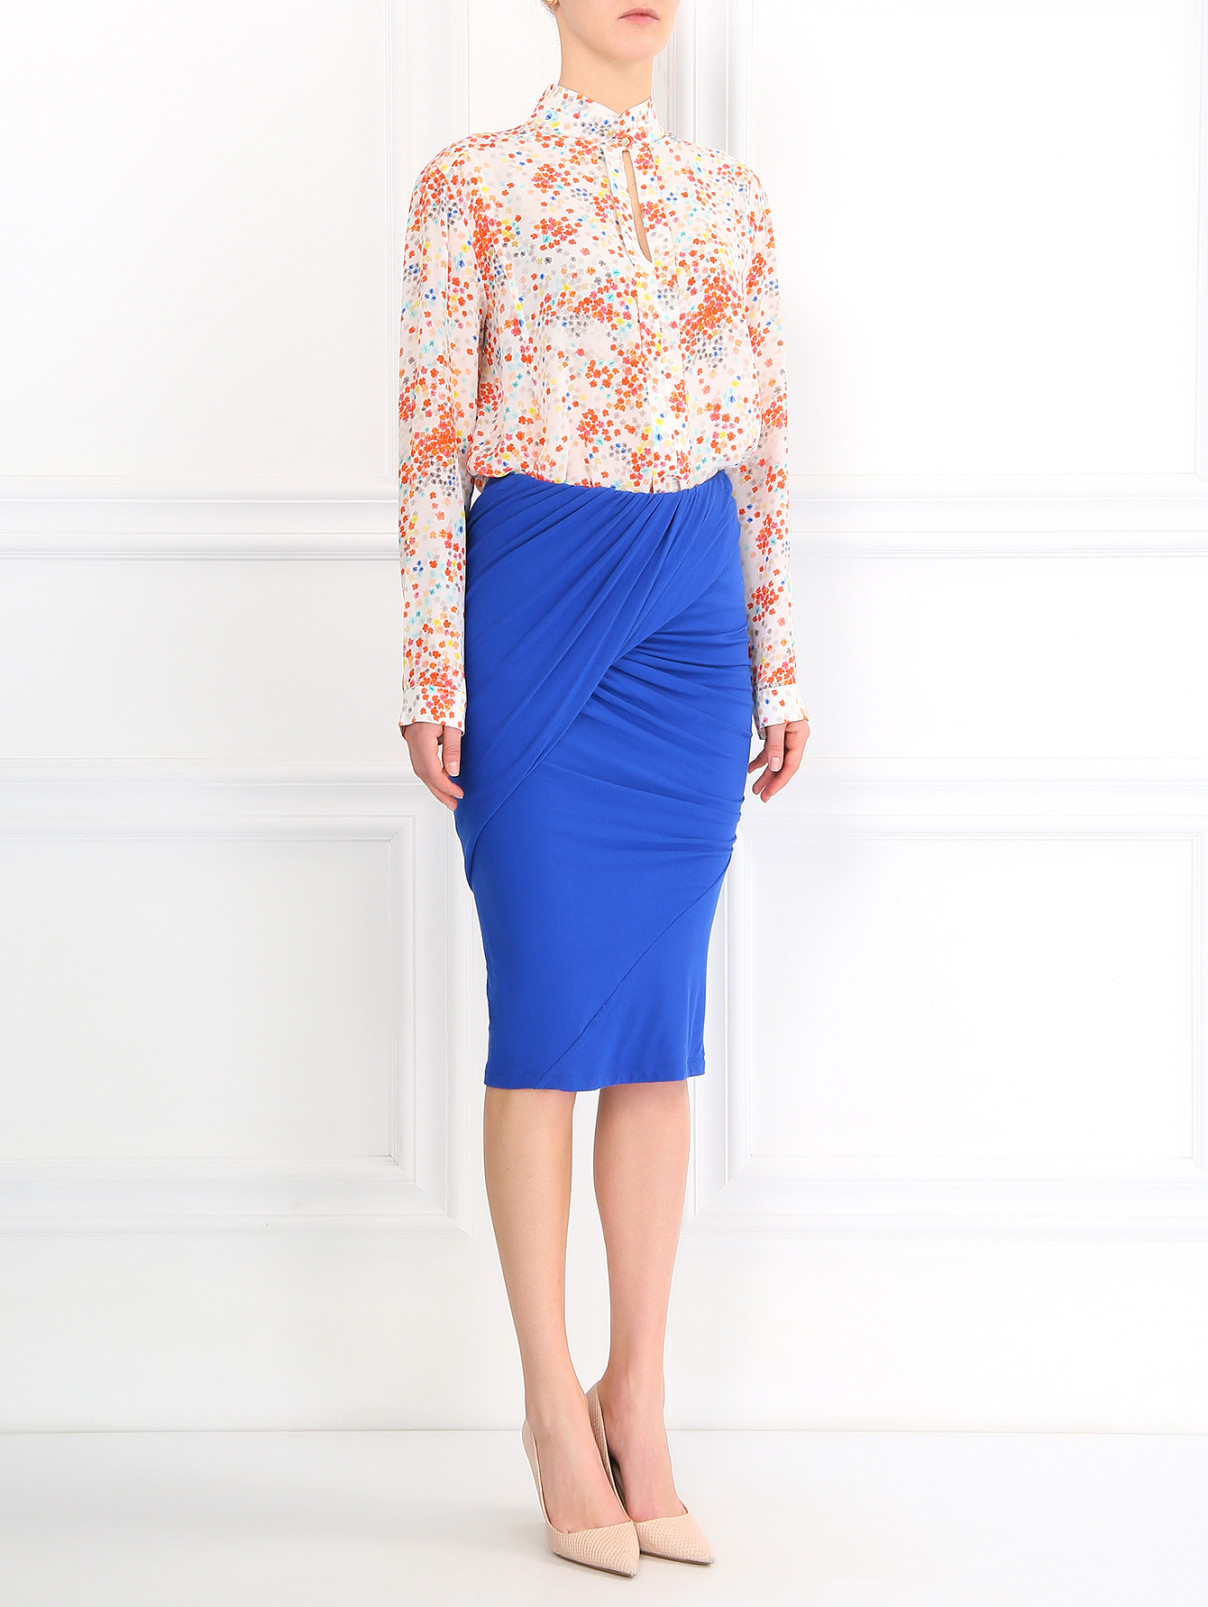 Трикотажная юбка-карандаш с драпировкой Donna Karan  –  Модель Общий вид  – Цвет:  Синий